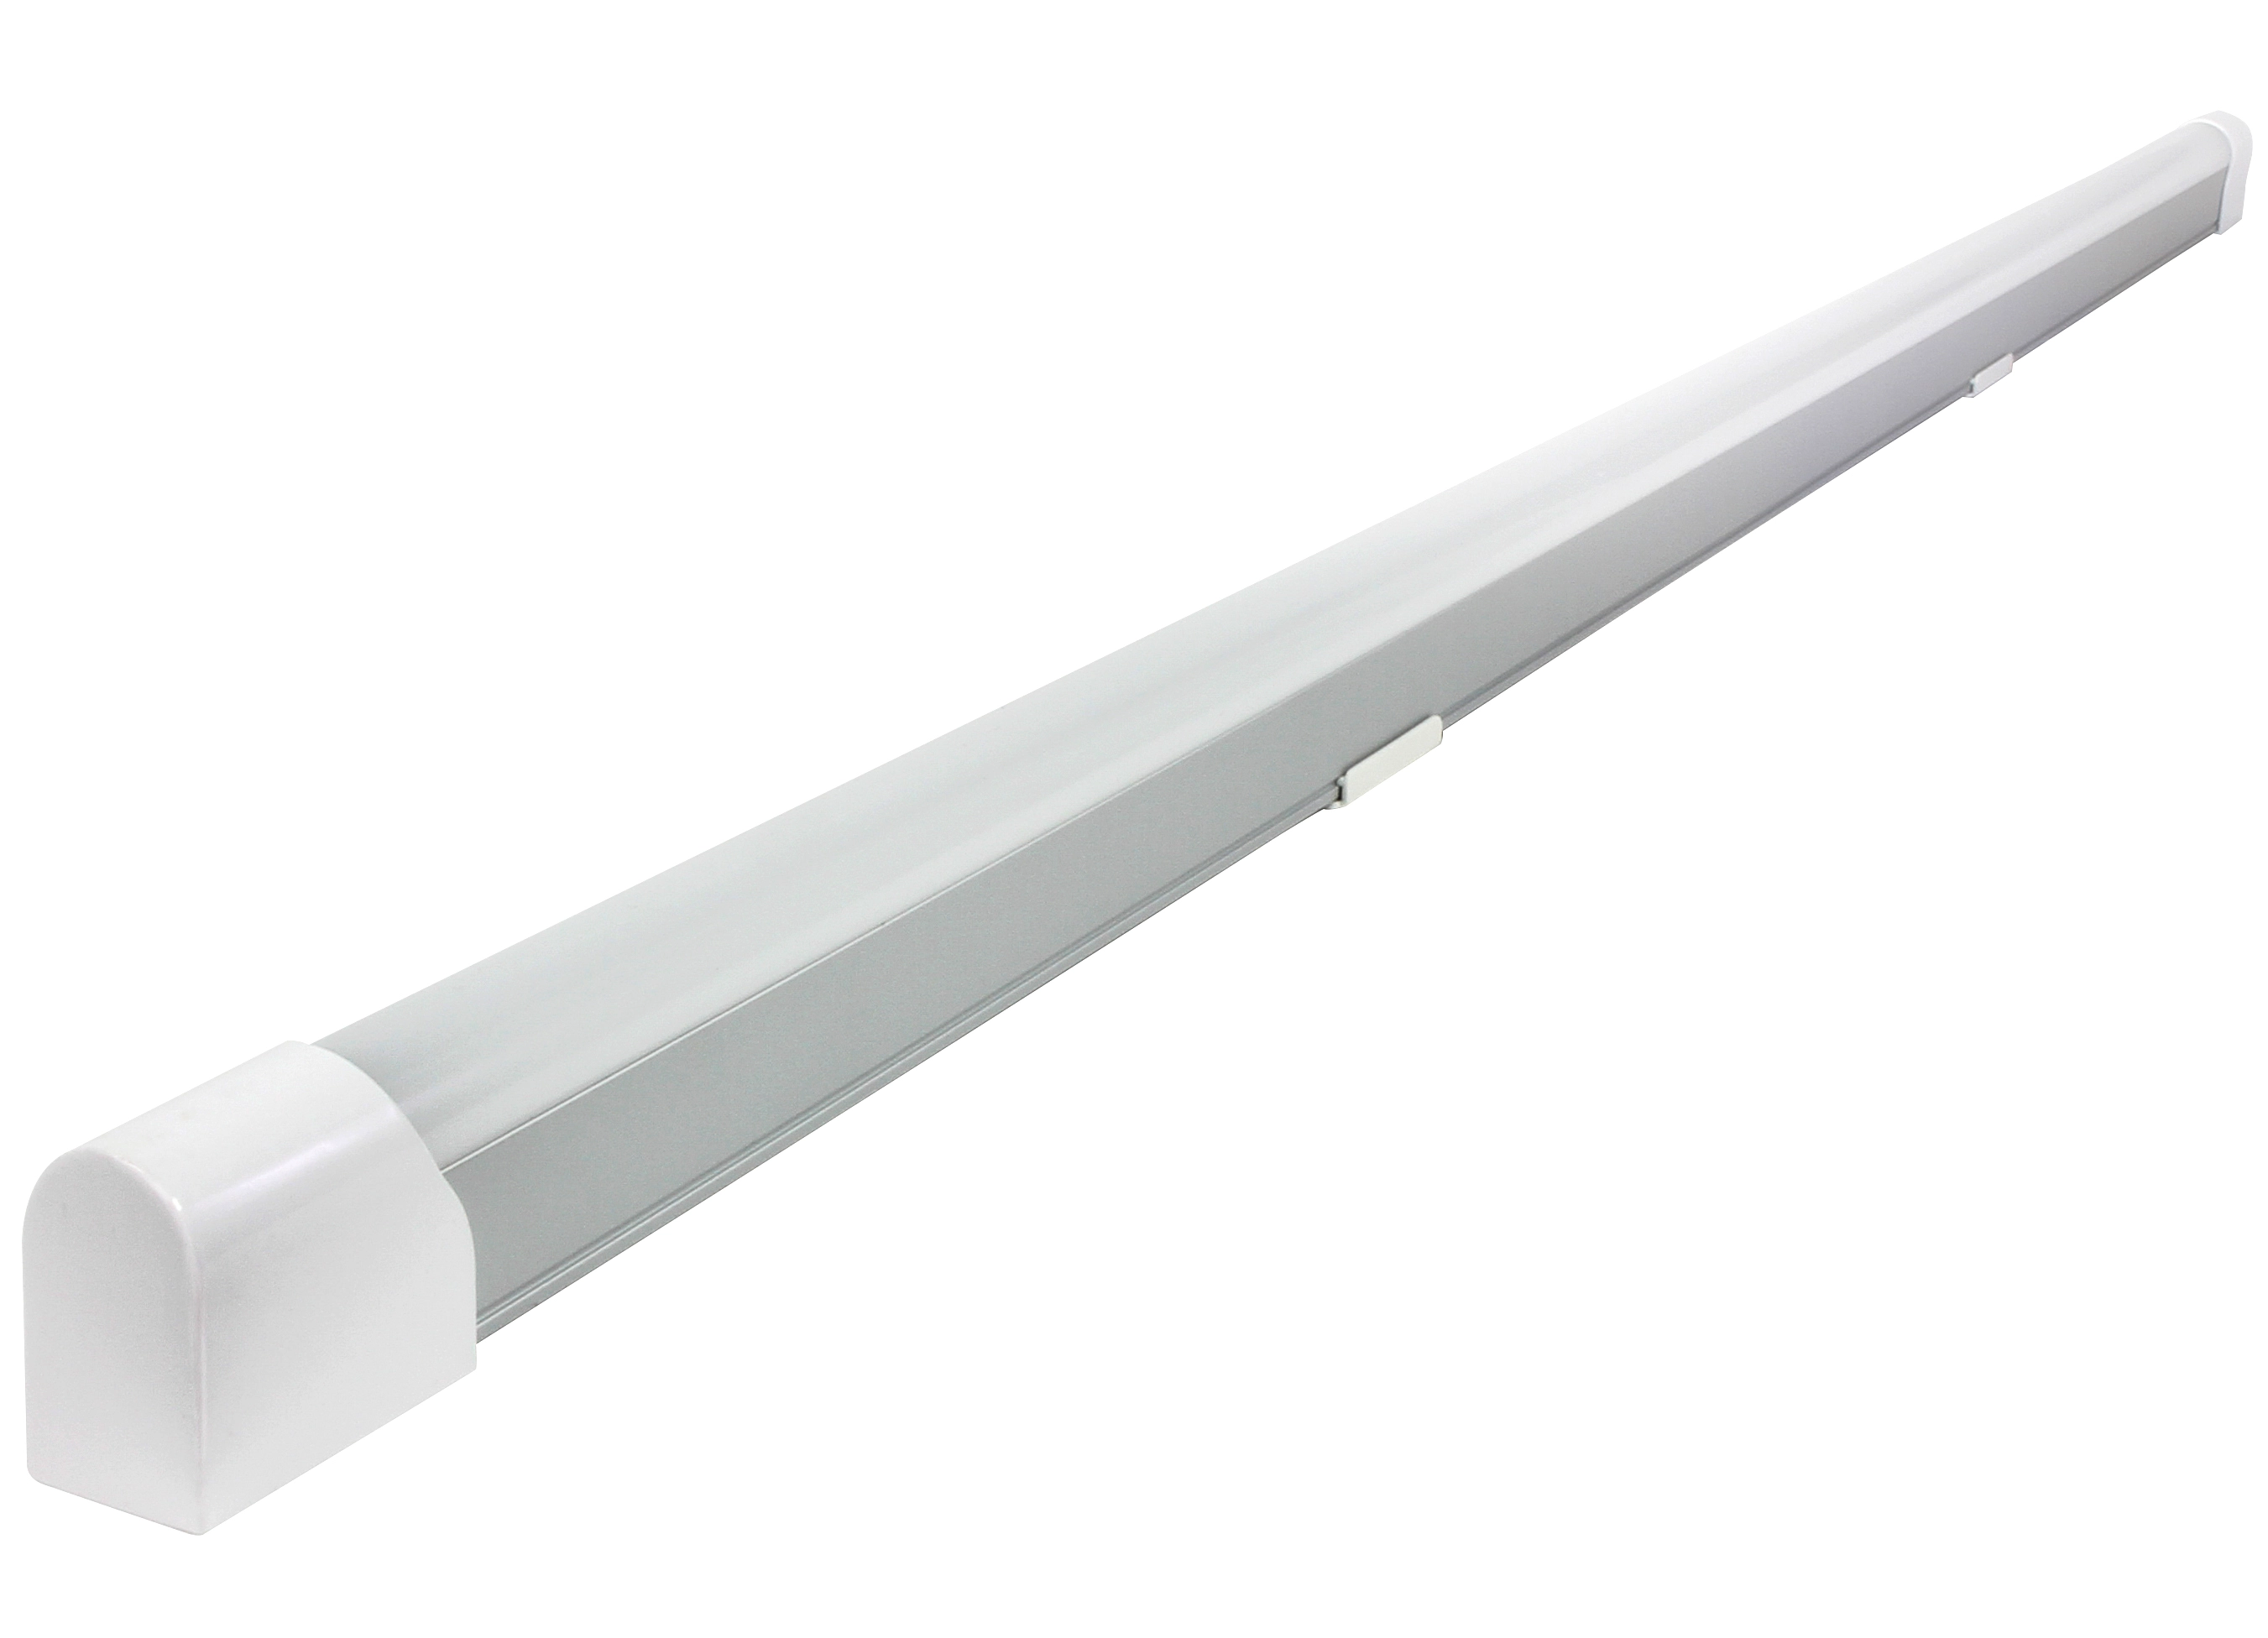 LED-Komplett-Lichtleiste Weiss / Länge 123 cm / 1 x 20 W kaufen bei OBI